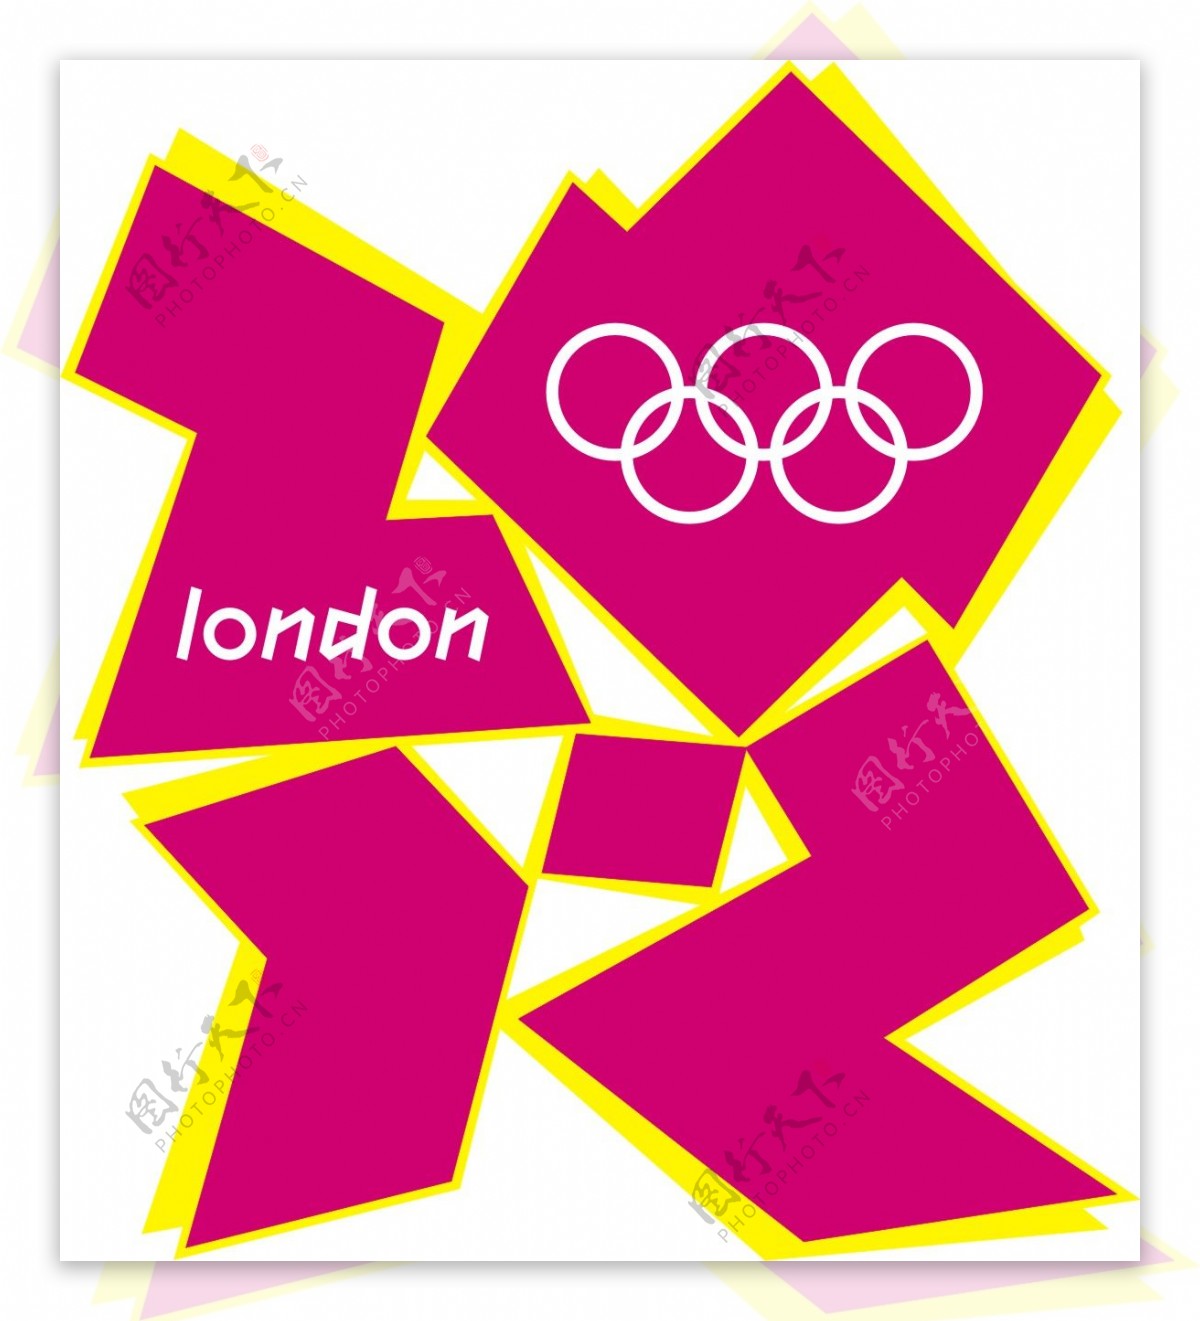 2012年伦敦奥运会会徽矢量素材